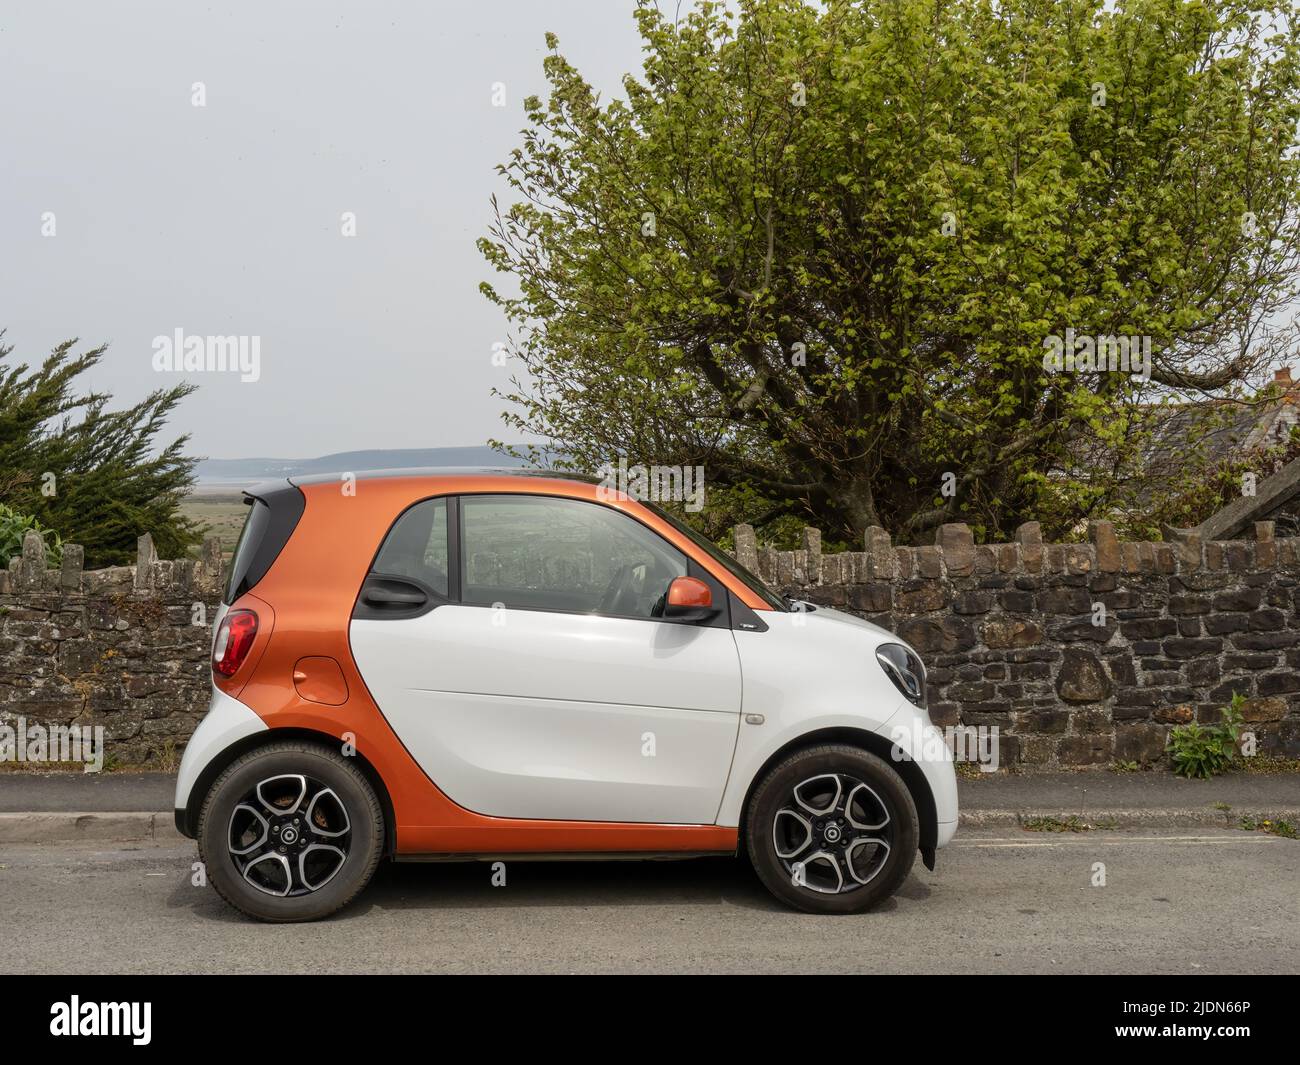 OVEST ho, INGHILTERRA - APRILE 30 2022: Carino Smart auto parcheggiata in strada. Veicolo economico di piccole dimensioni. Foto Stock